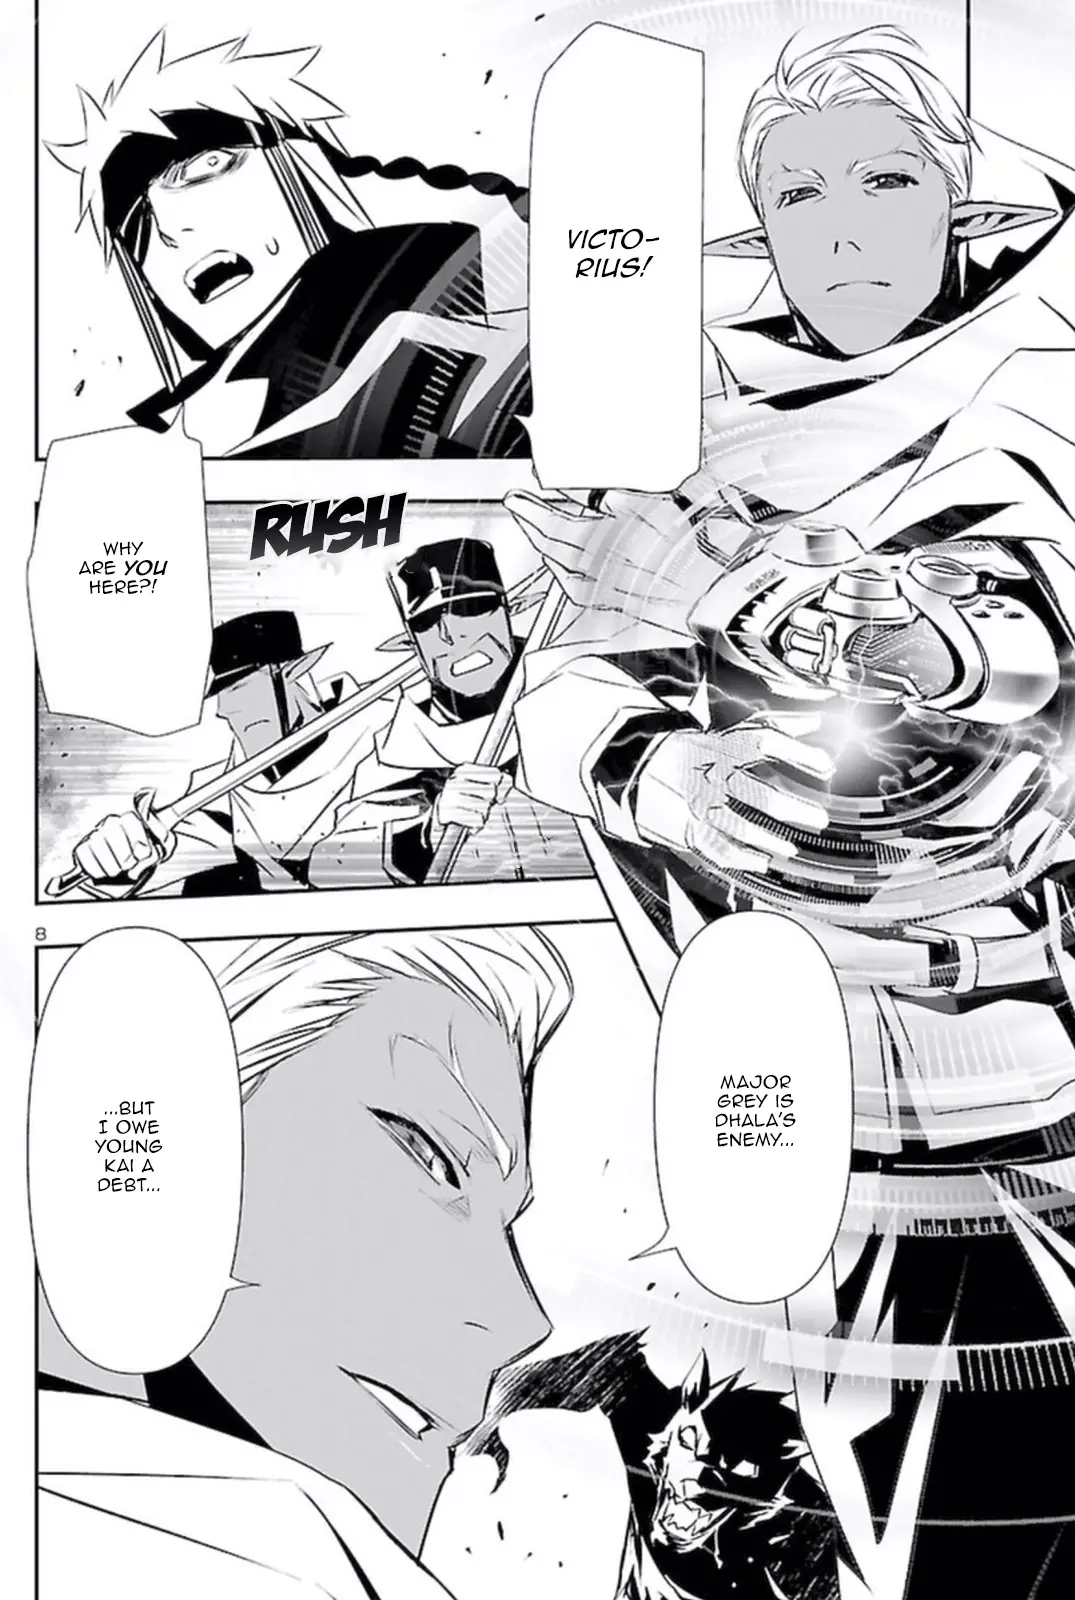 Shinju no Nectar - 64 page 9-78f27deb